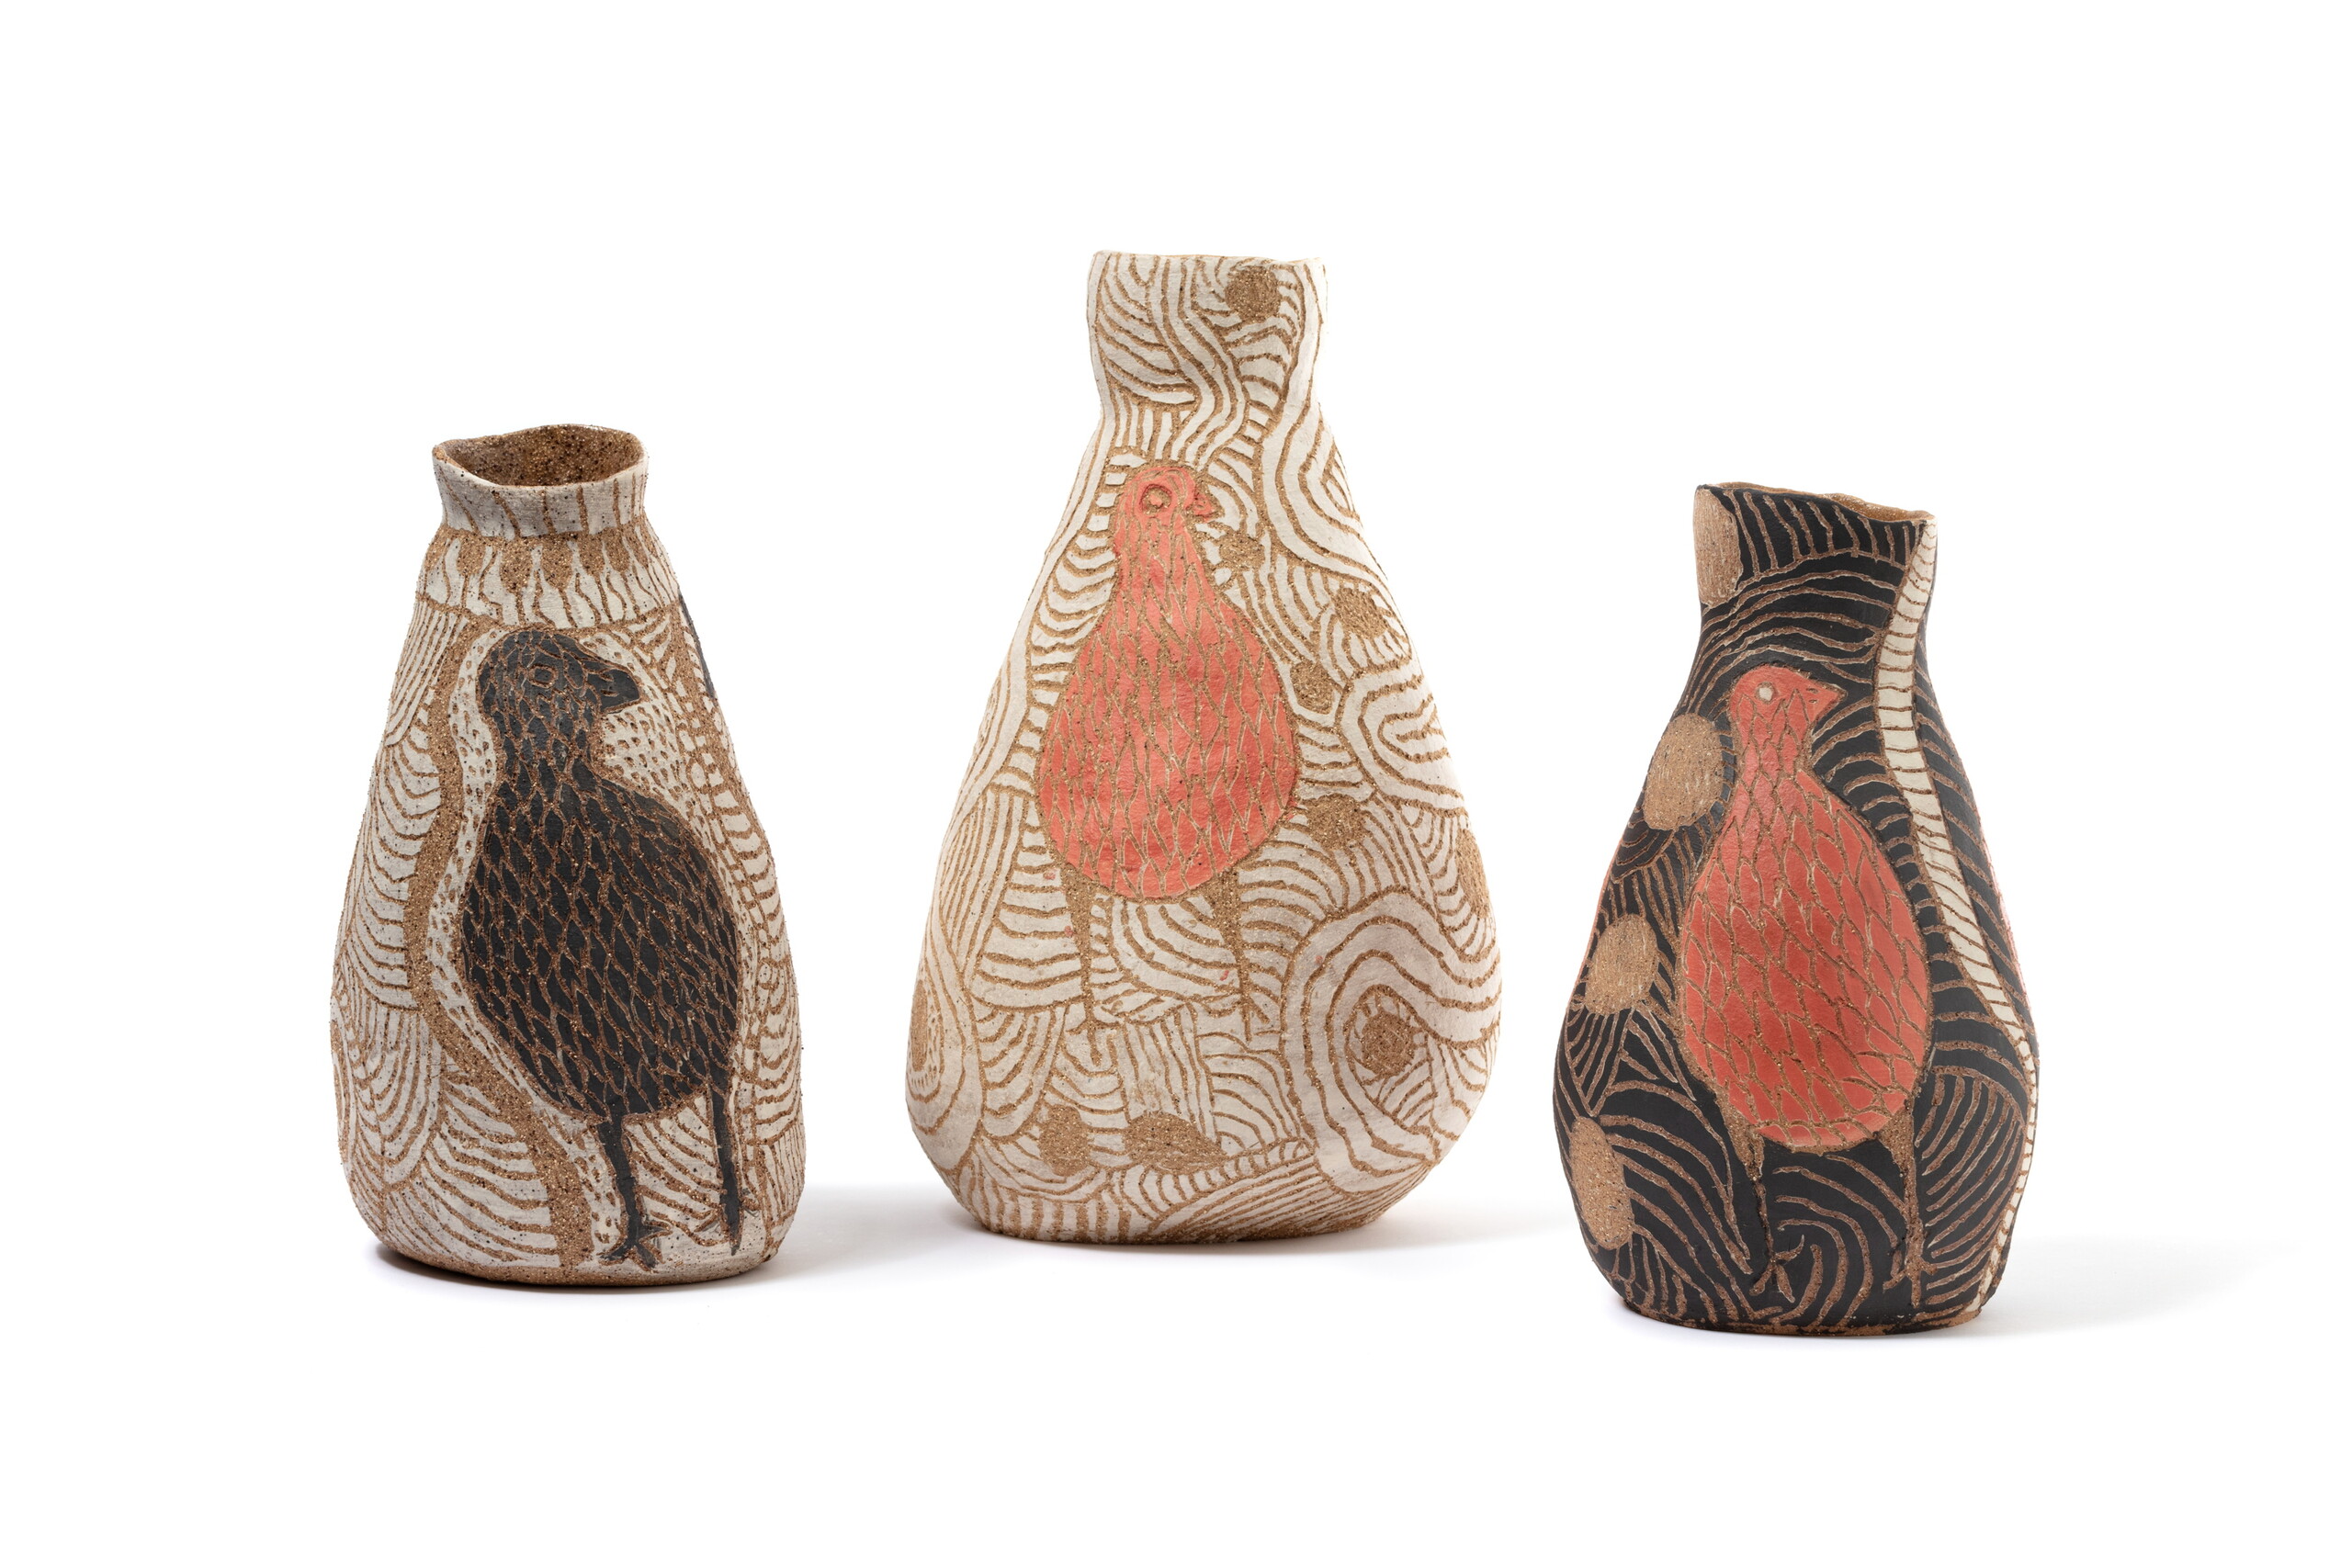 Carlene Thompson, three vases <em>Kalaya Ngura (Emu Country)</em>, stoneware with sgraffito decoration, Pukatja, APY Lands / Adelaide, South Australia, 2020. Photo: Zan Wimberley